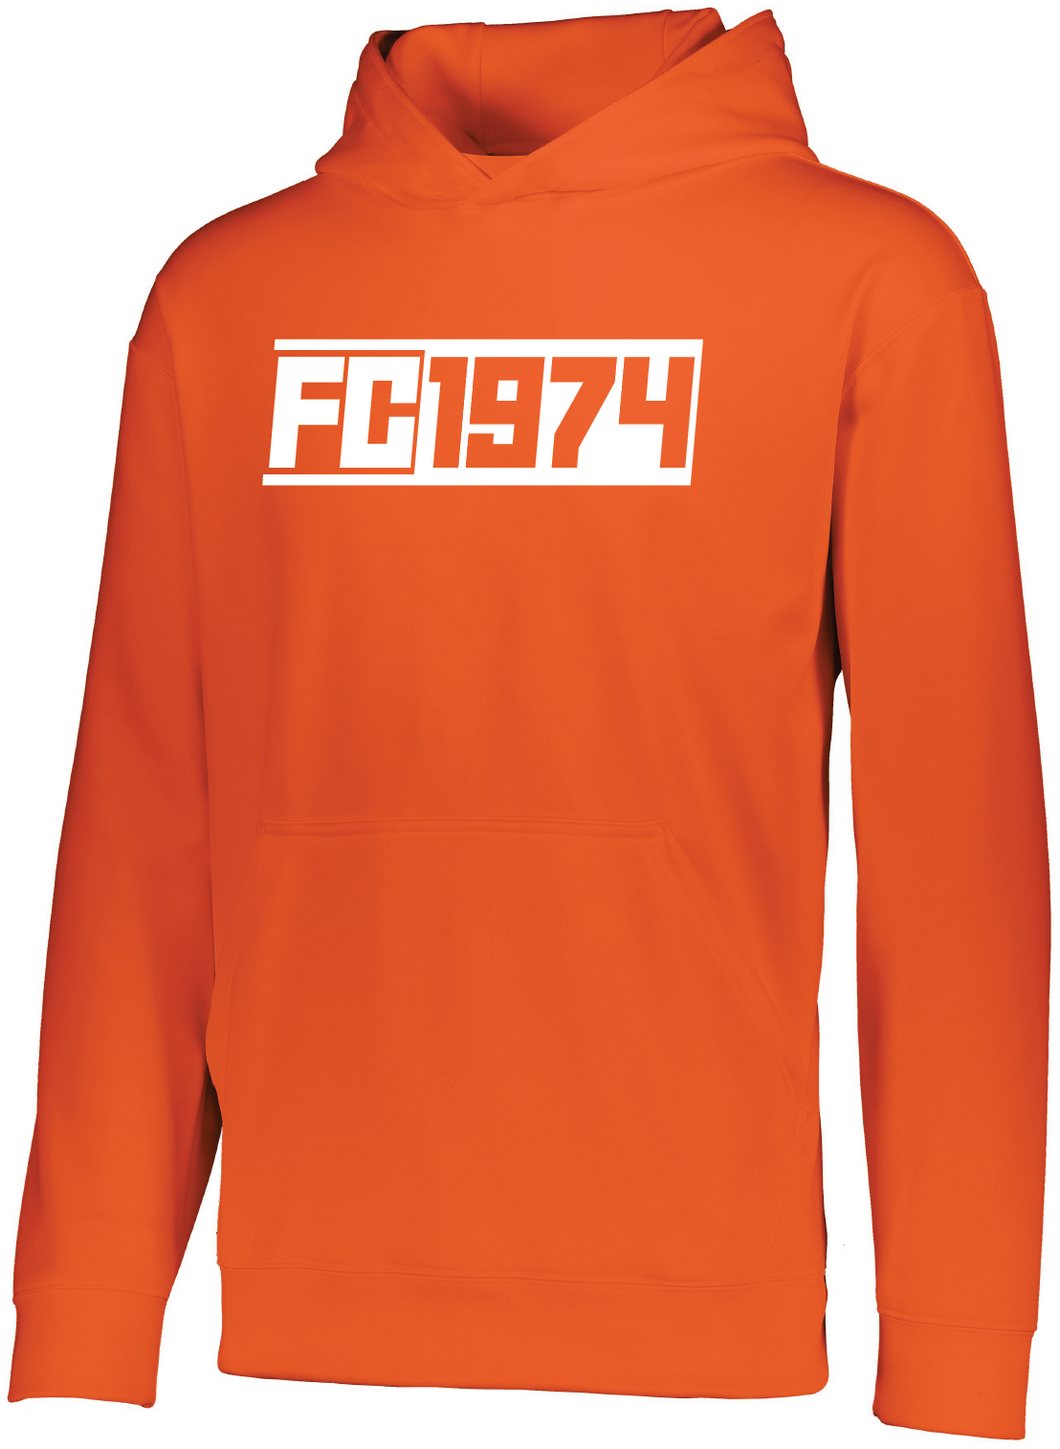 FC1974 Orange Performance Hoodie